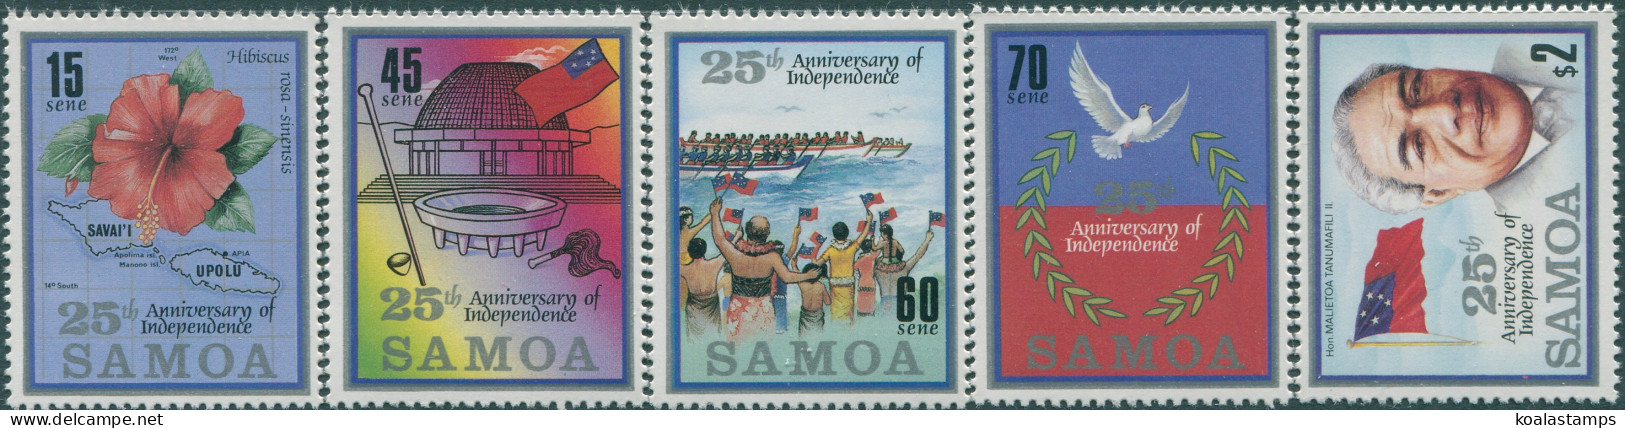 Samoa 1987 SG744-748 25th Anniversary Set MNH - Samoa